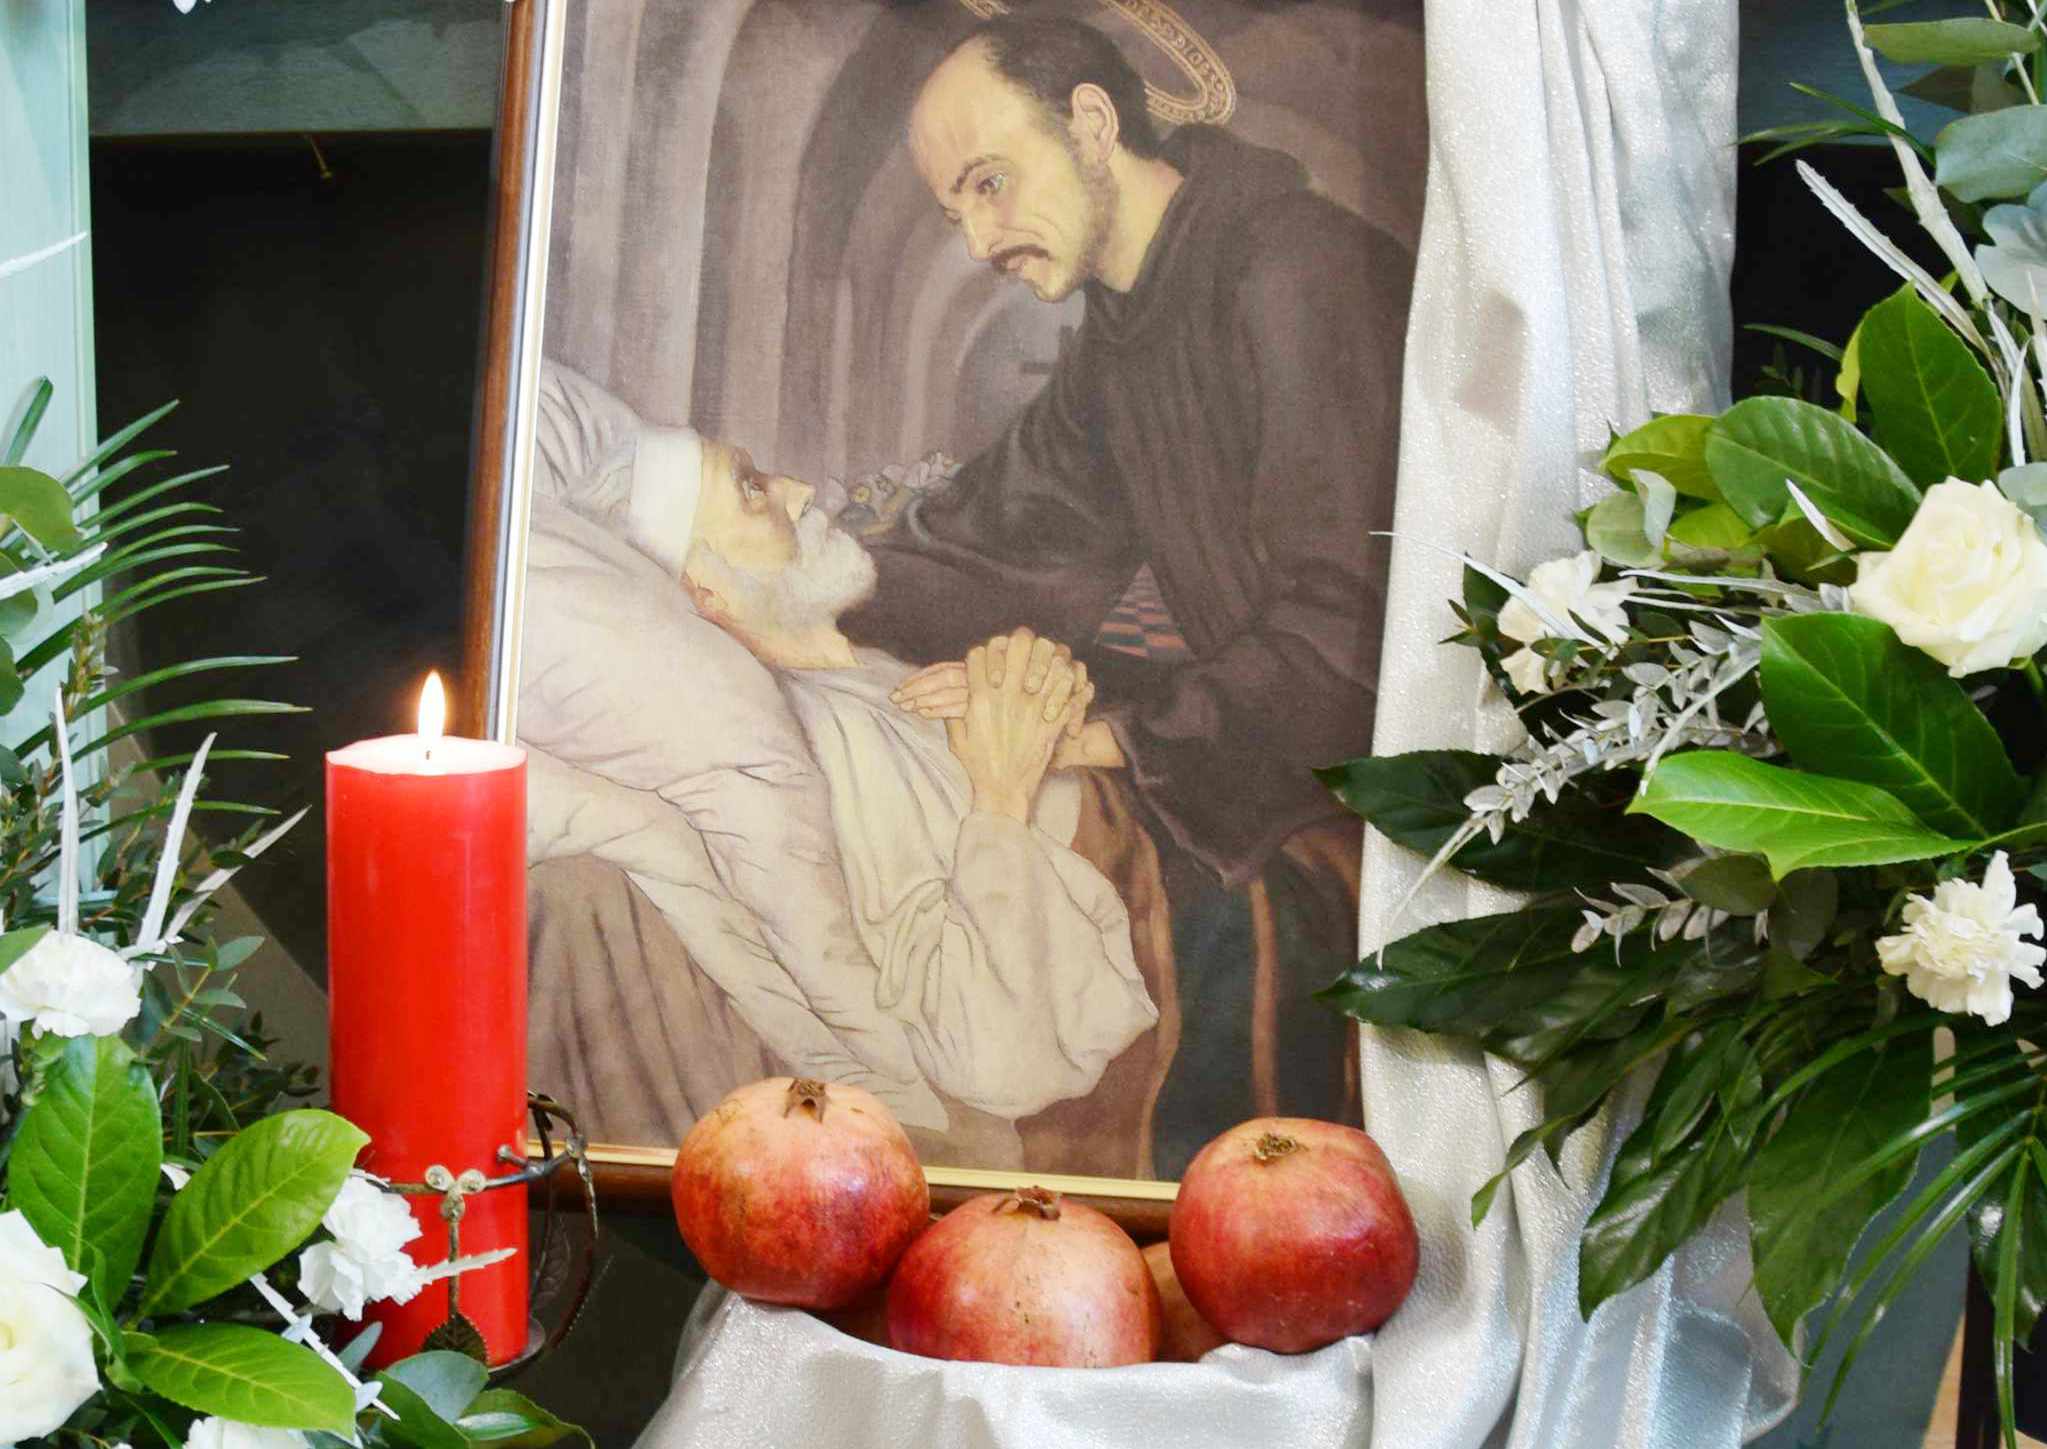 Zdjęcie przedstawia obraz z postacią świętego Jana Bożego pochylającego się nad chorym, leżącym człowiekiem. Obok obrazu widać kwiaty, świecę oraz owoce granatu